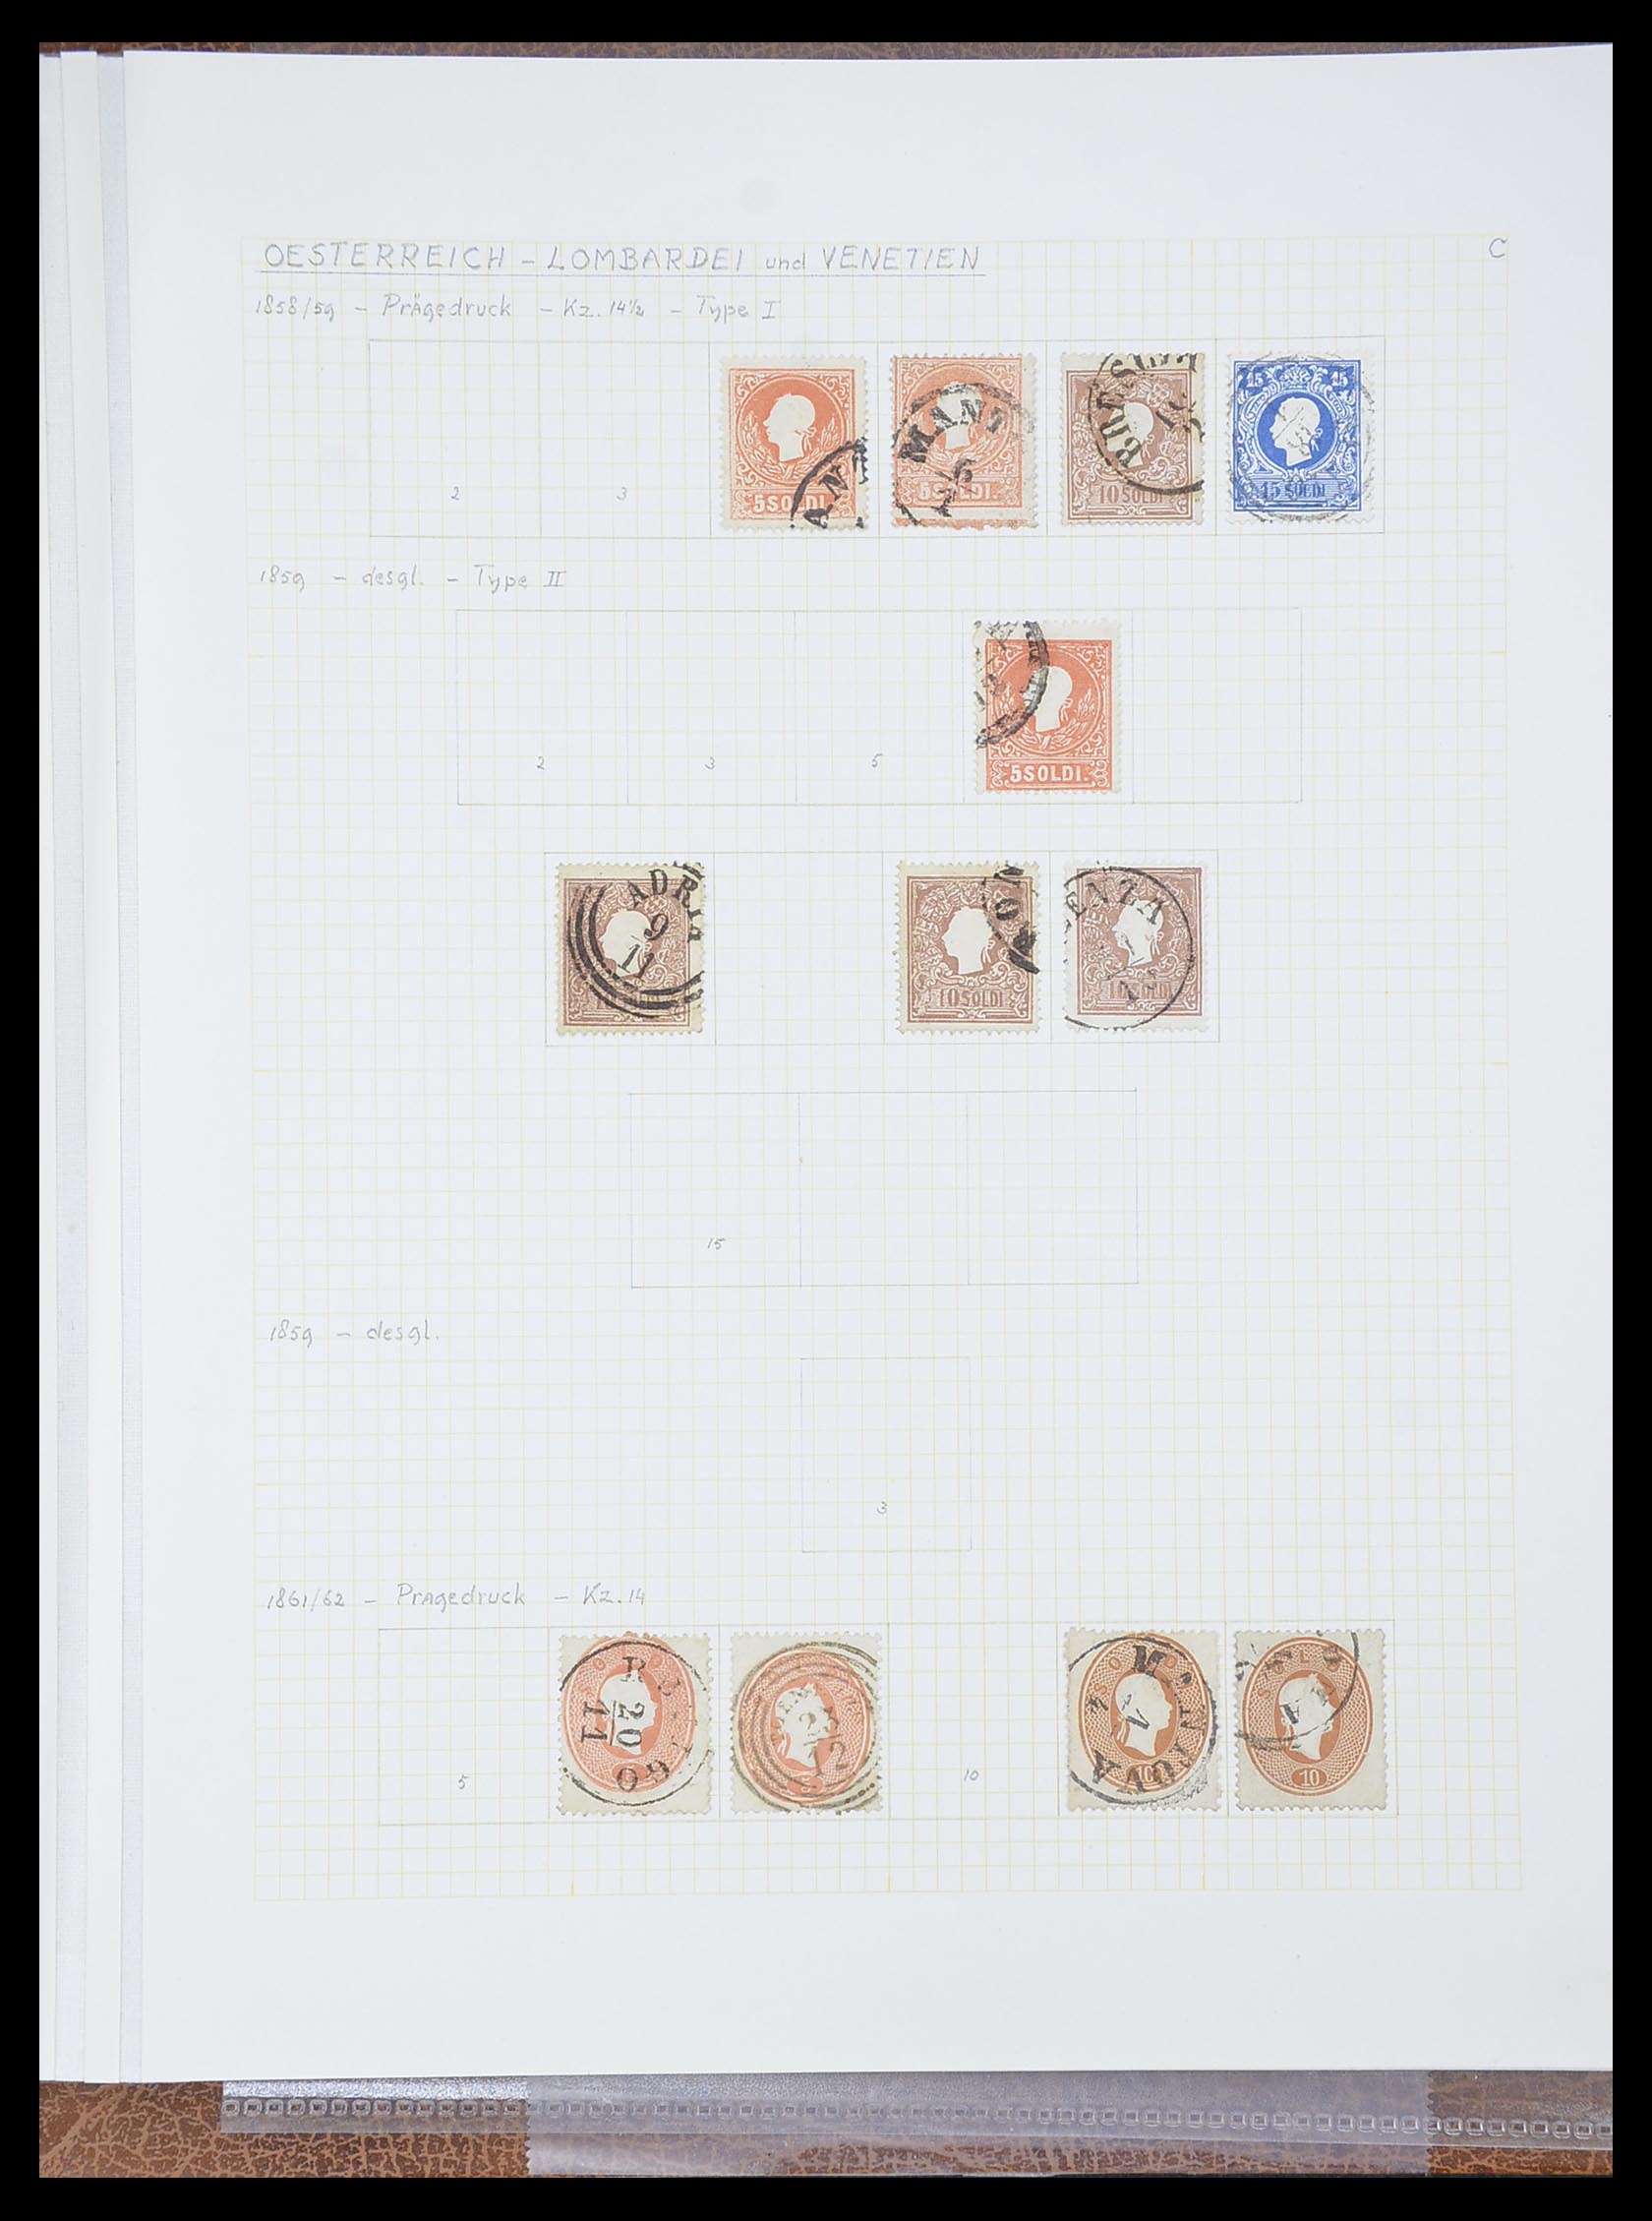 33621 028 - Postzegelverzameling 33621 Italiaanse Staten supercollectie 1851-1868